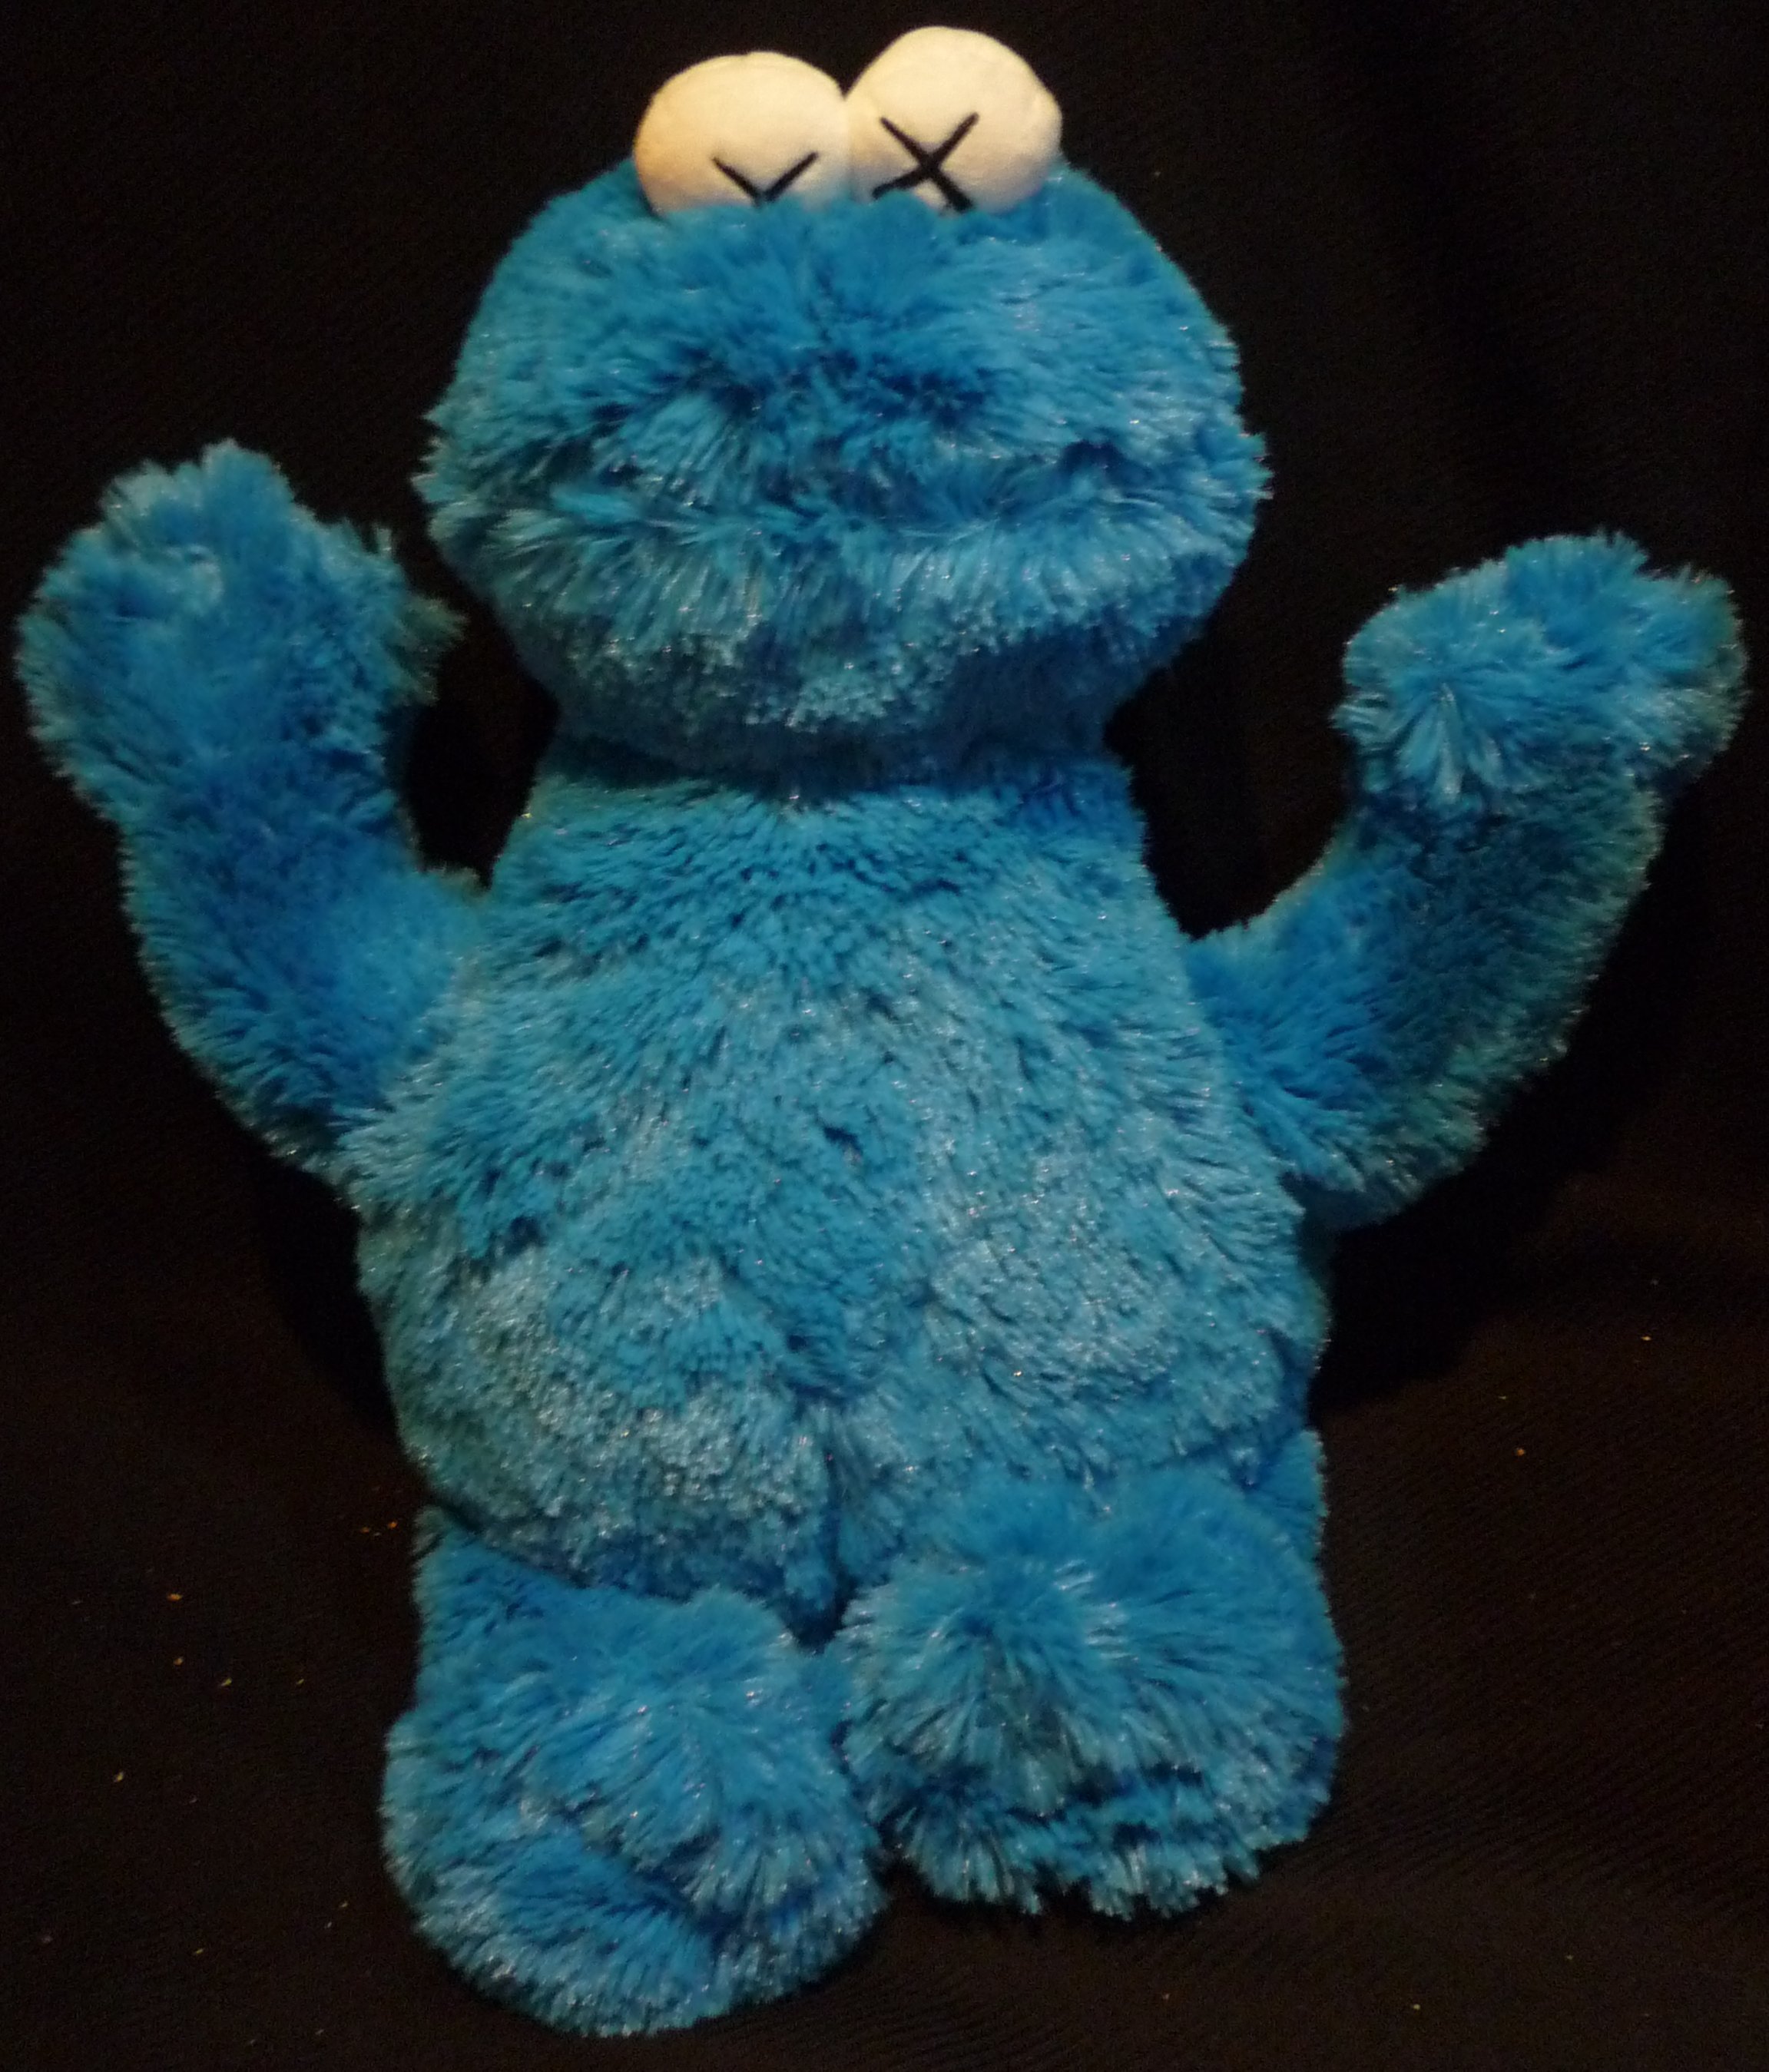  Giá trị tuyệt vời Hàng Thời Trang Phổ Biến Đồ Chơi Nhồi Bông UNIQLO x  KAWS x Sesame Street Thương Hiệu Lớn Elmo Ernie Burt Cookie Monster   Lazadavn